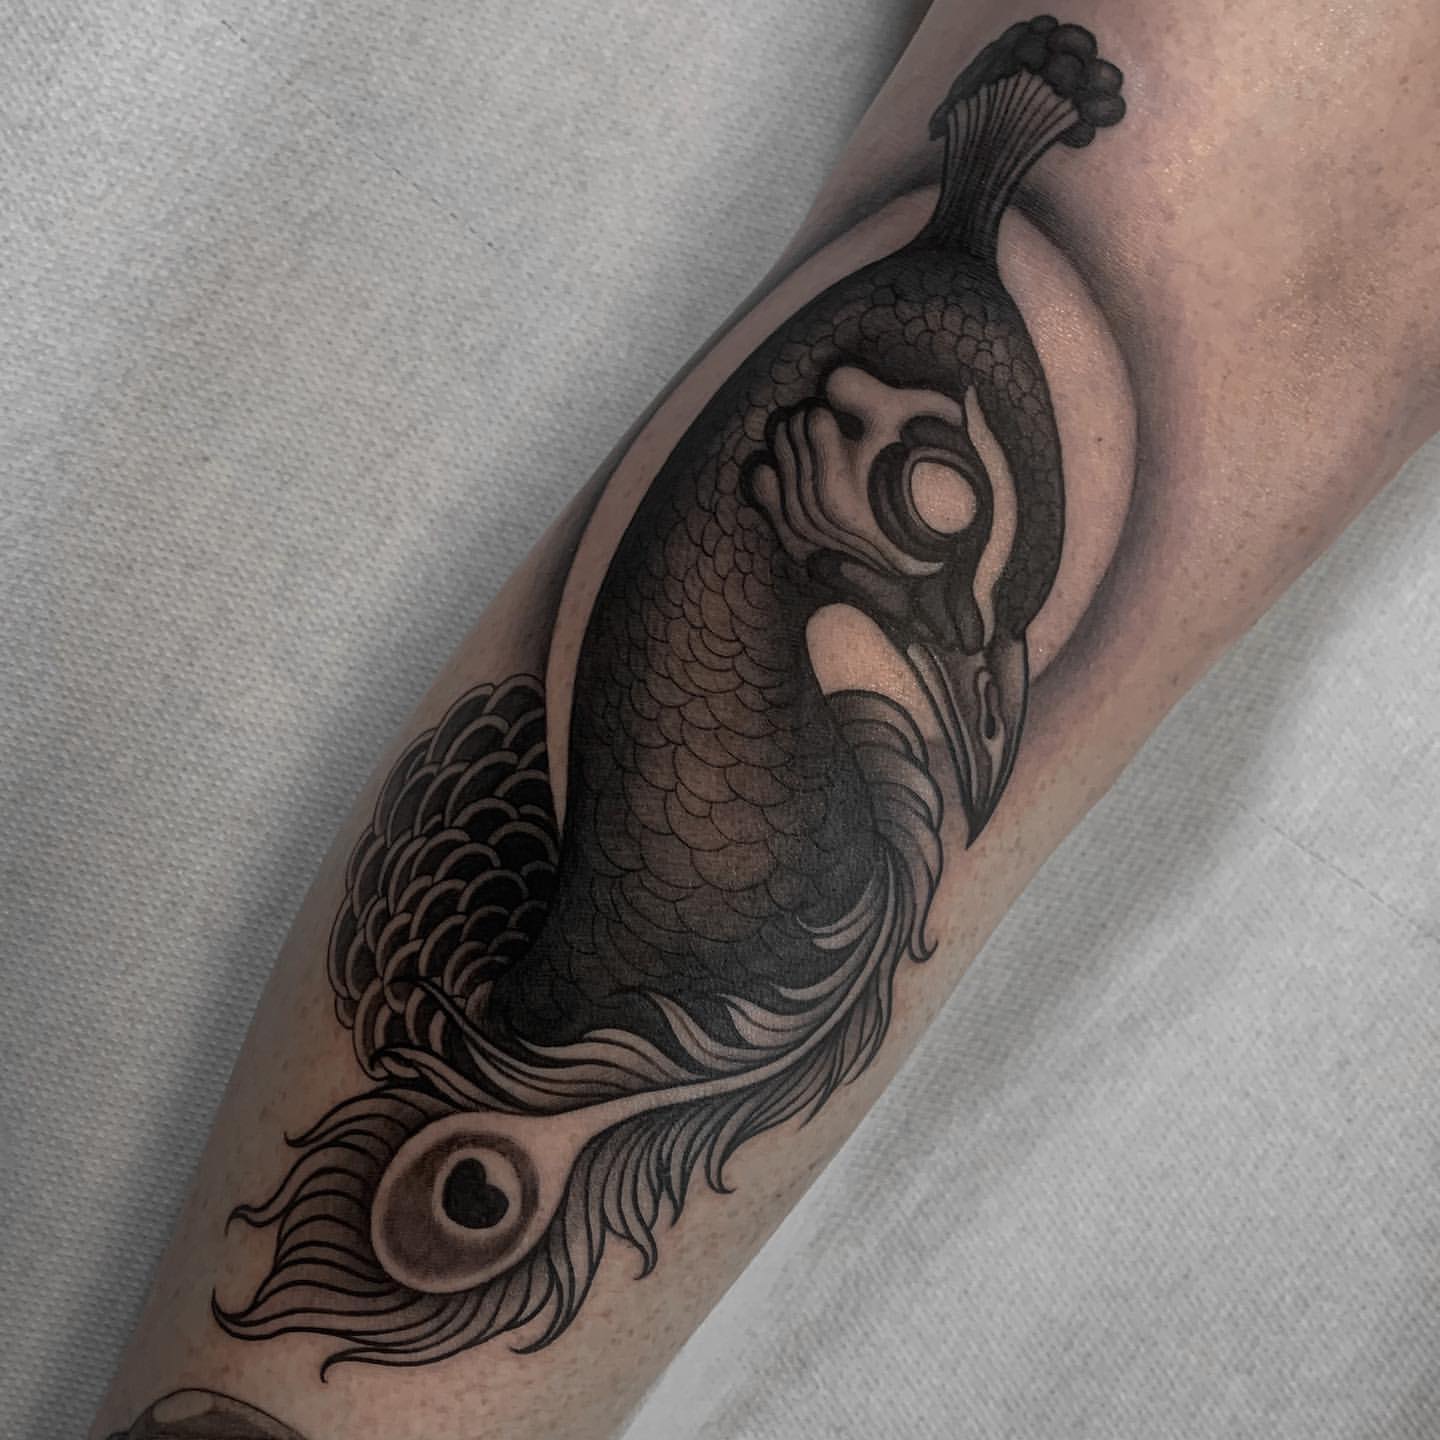 Peacock Tattoo Ideas 30